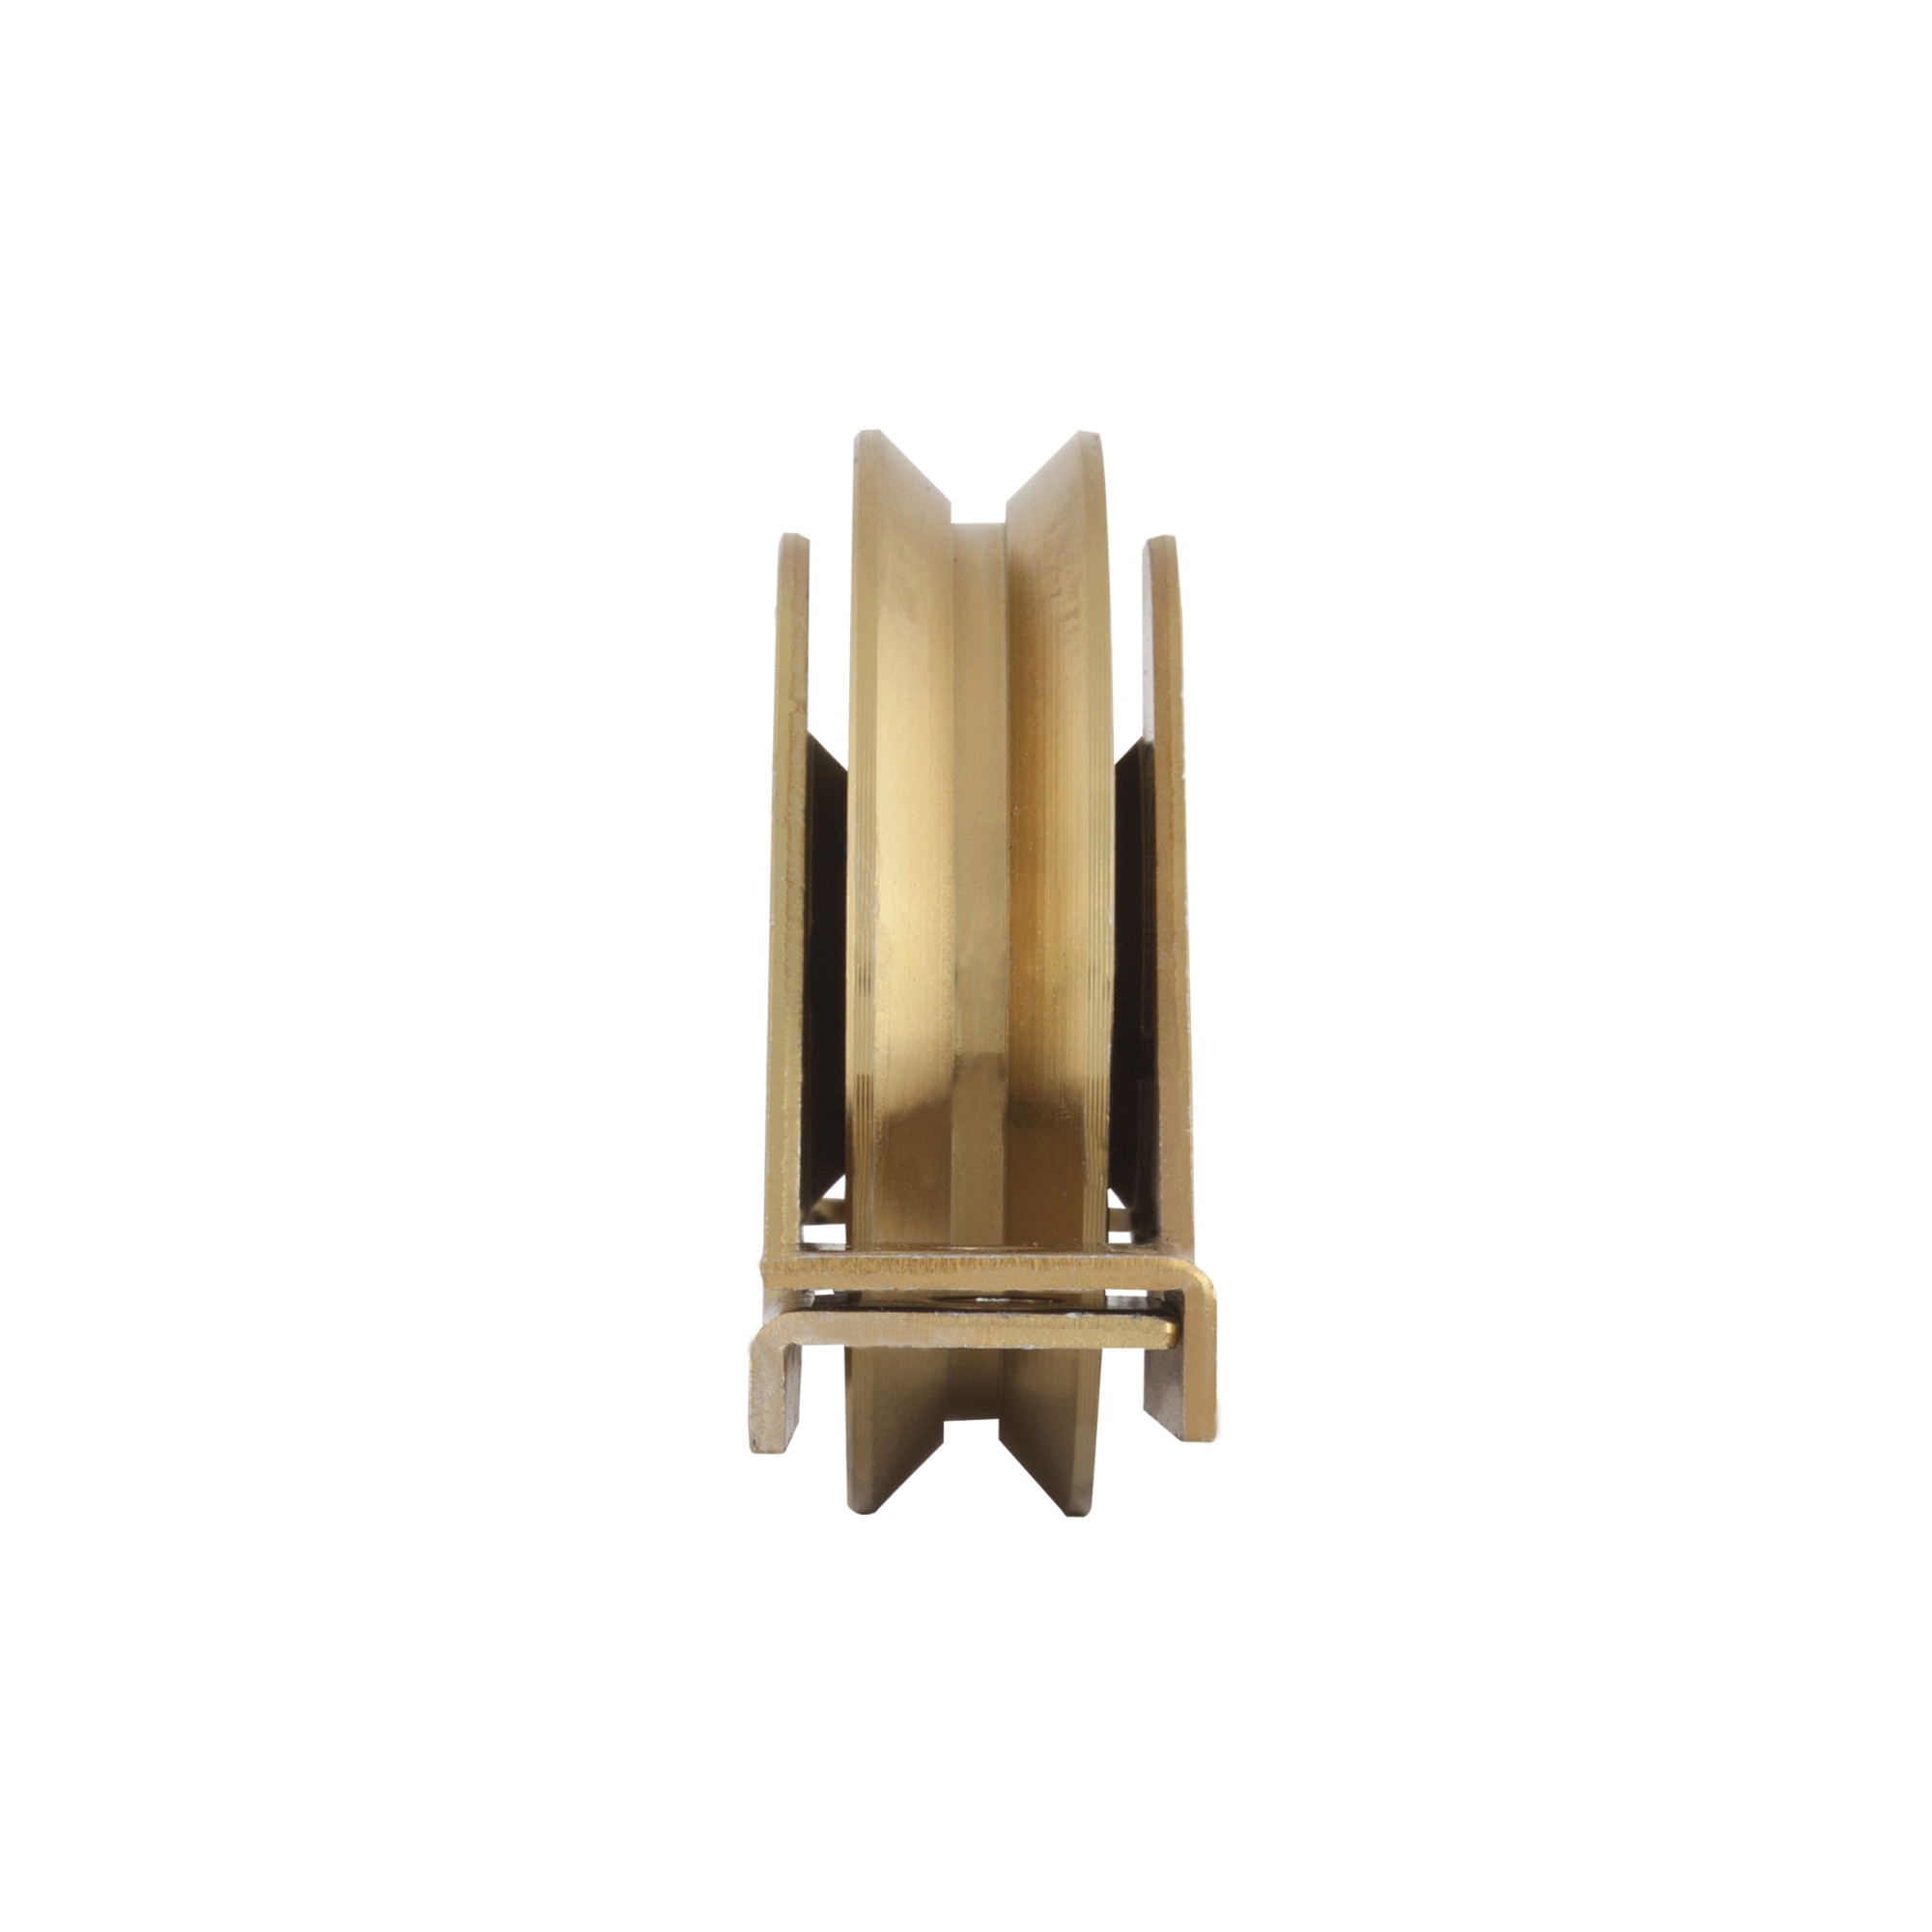 Roata Semi-ingropata tip V cu Suport si Rulment pentru Porti Culisante EvoTools, diametru 90 mm